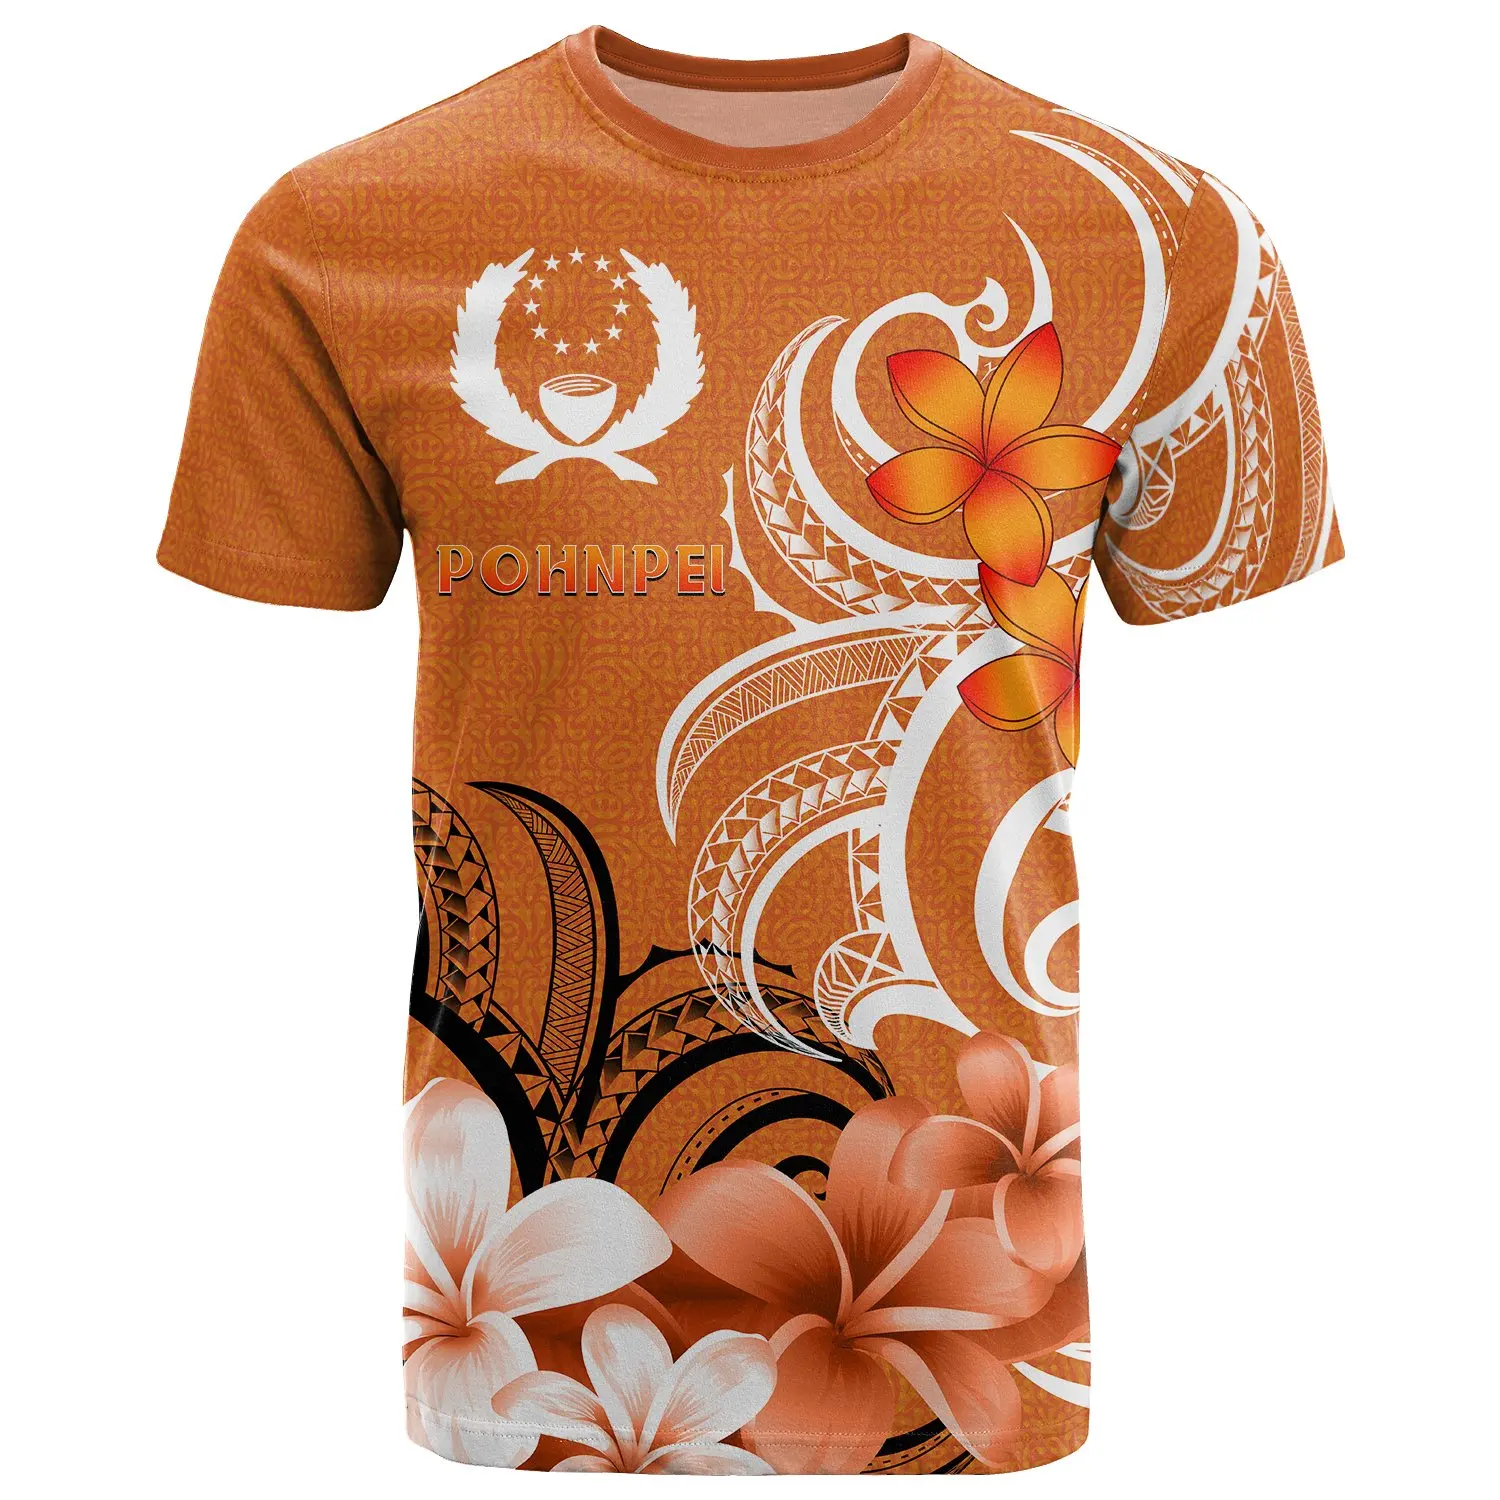 

Летняя новая футболка PLstar Cosmos Pohnpei с 3D рисунком, женская и Мужская трендовая футболка с коротким рукавом